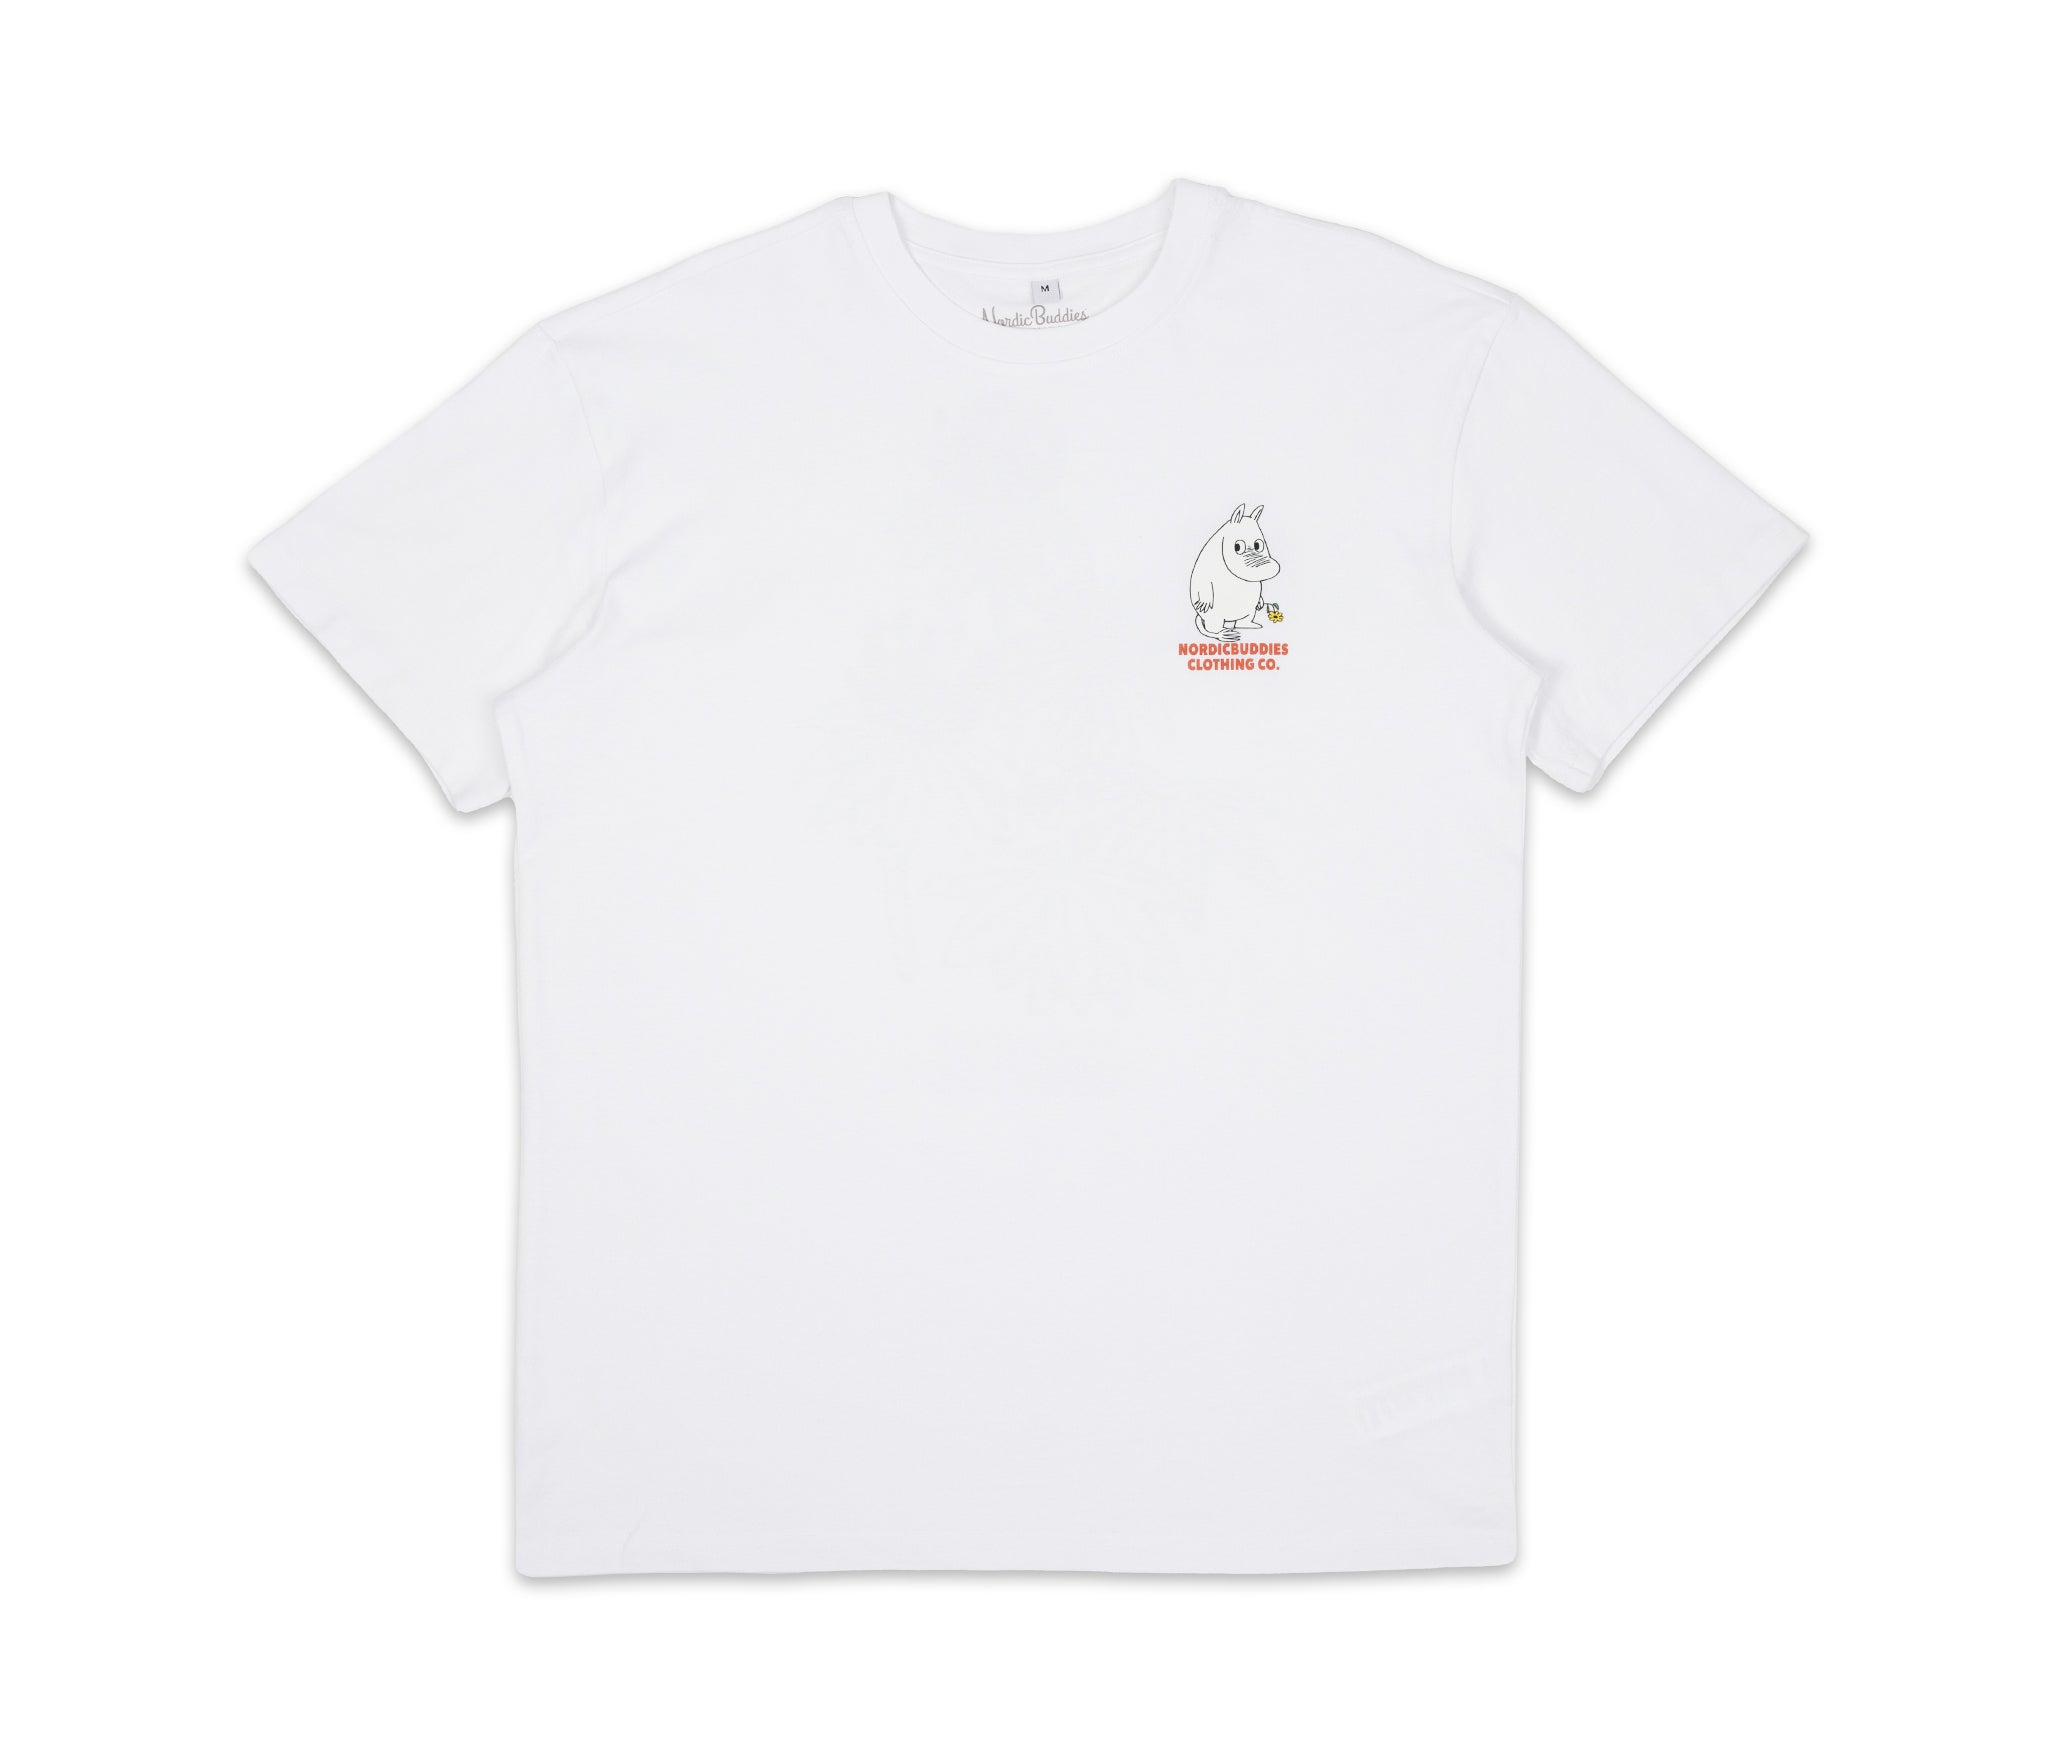 Moomintroll's Flower T-Shirt Unisex - White